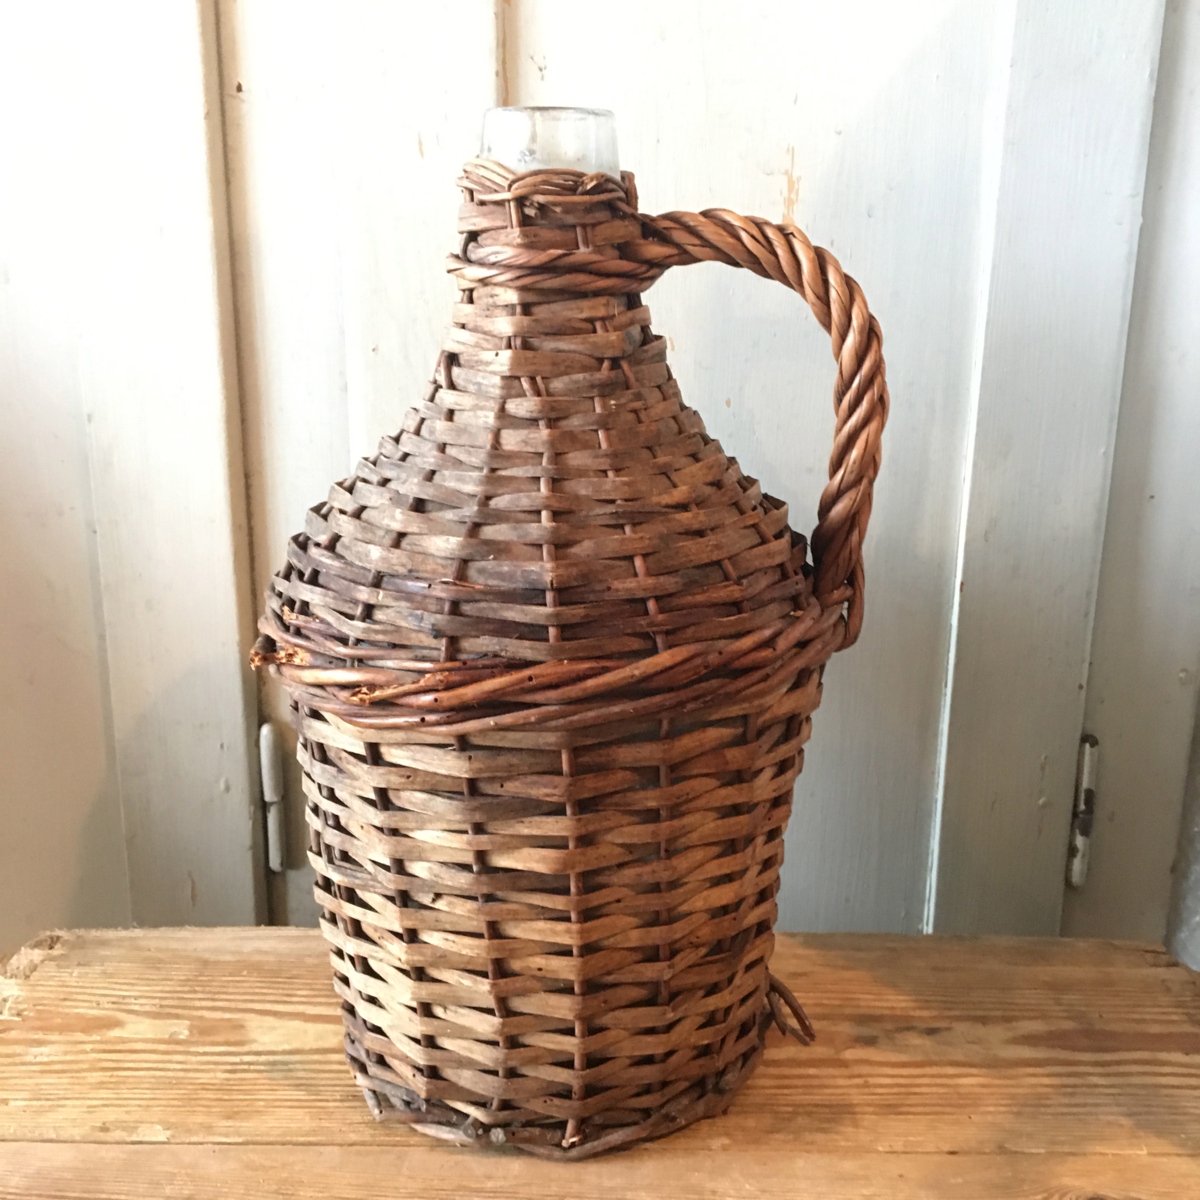 オランダ製 アンティーク ワインボトル インテリア 籐 籐編み 花瓶